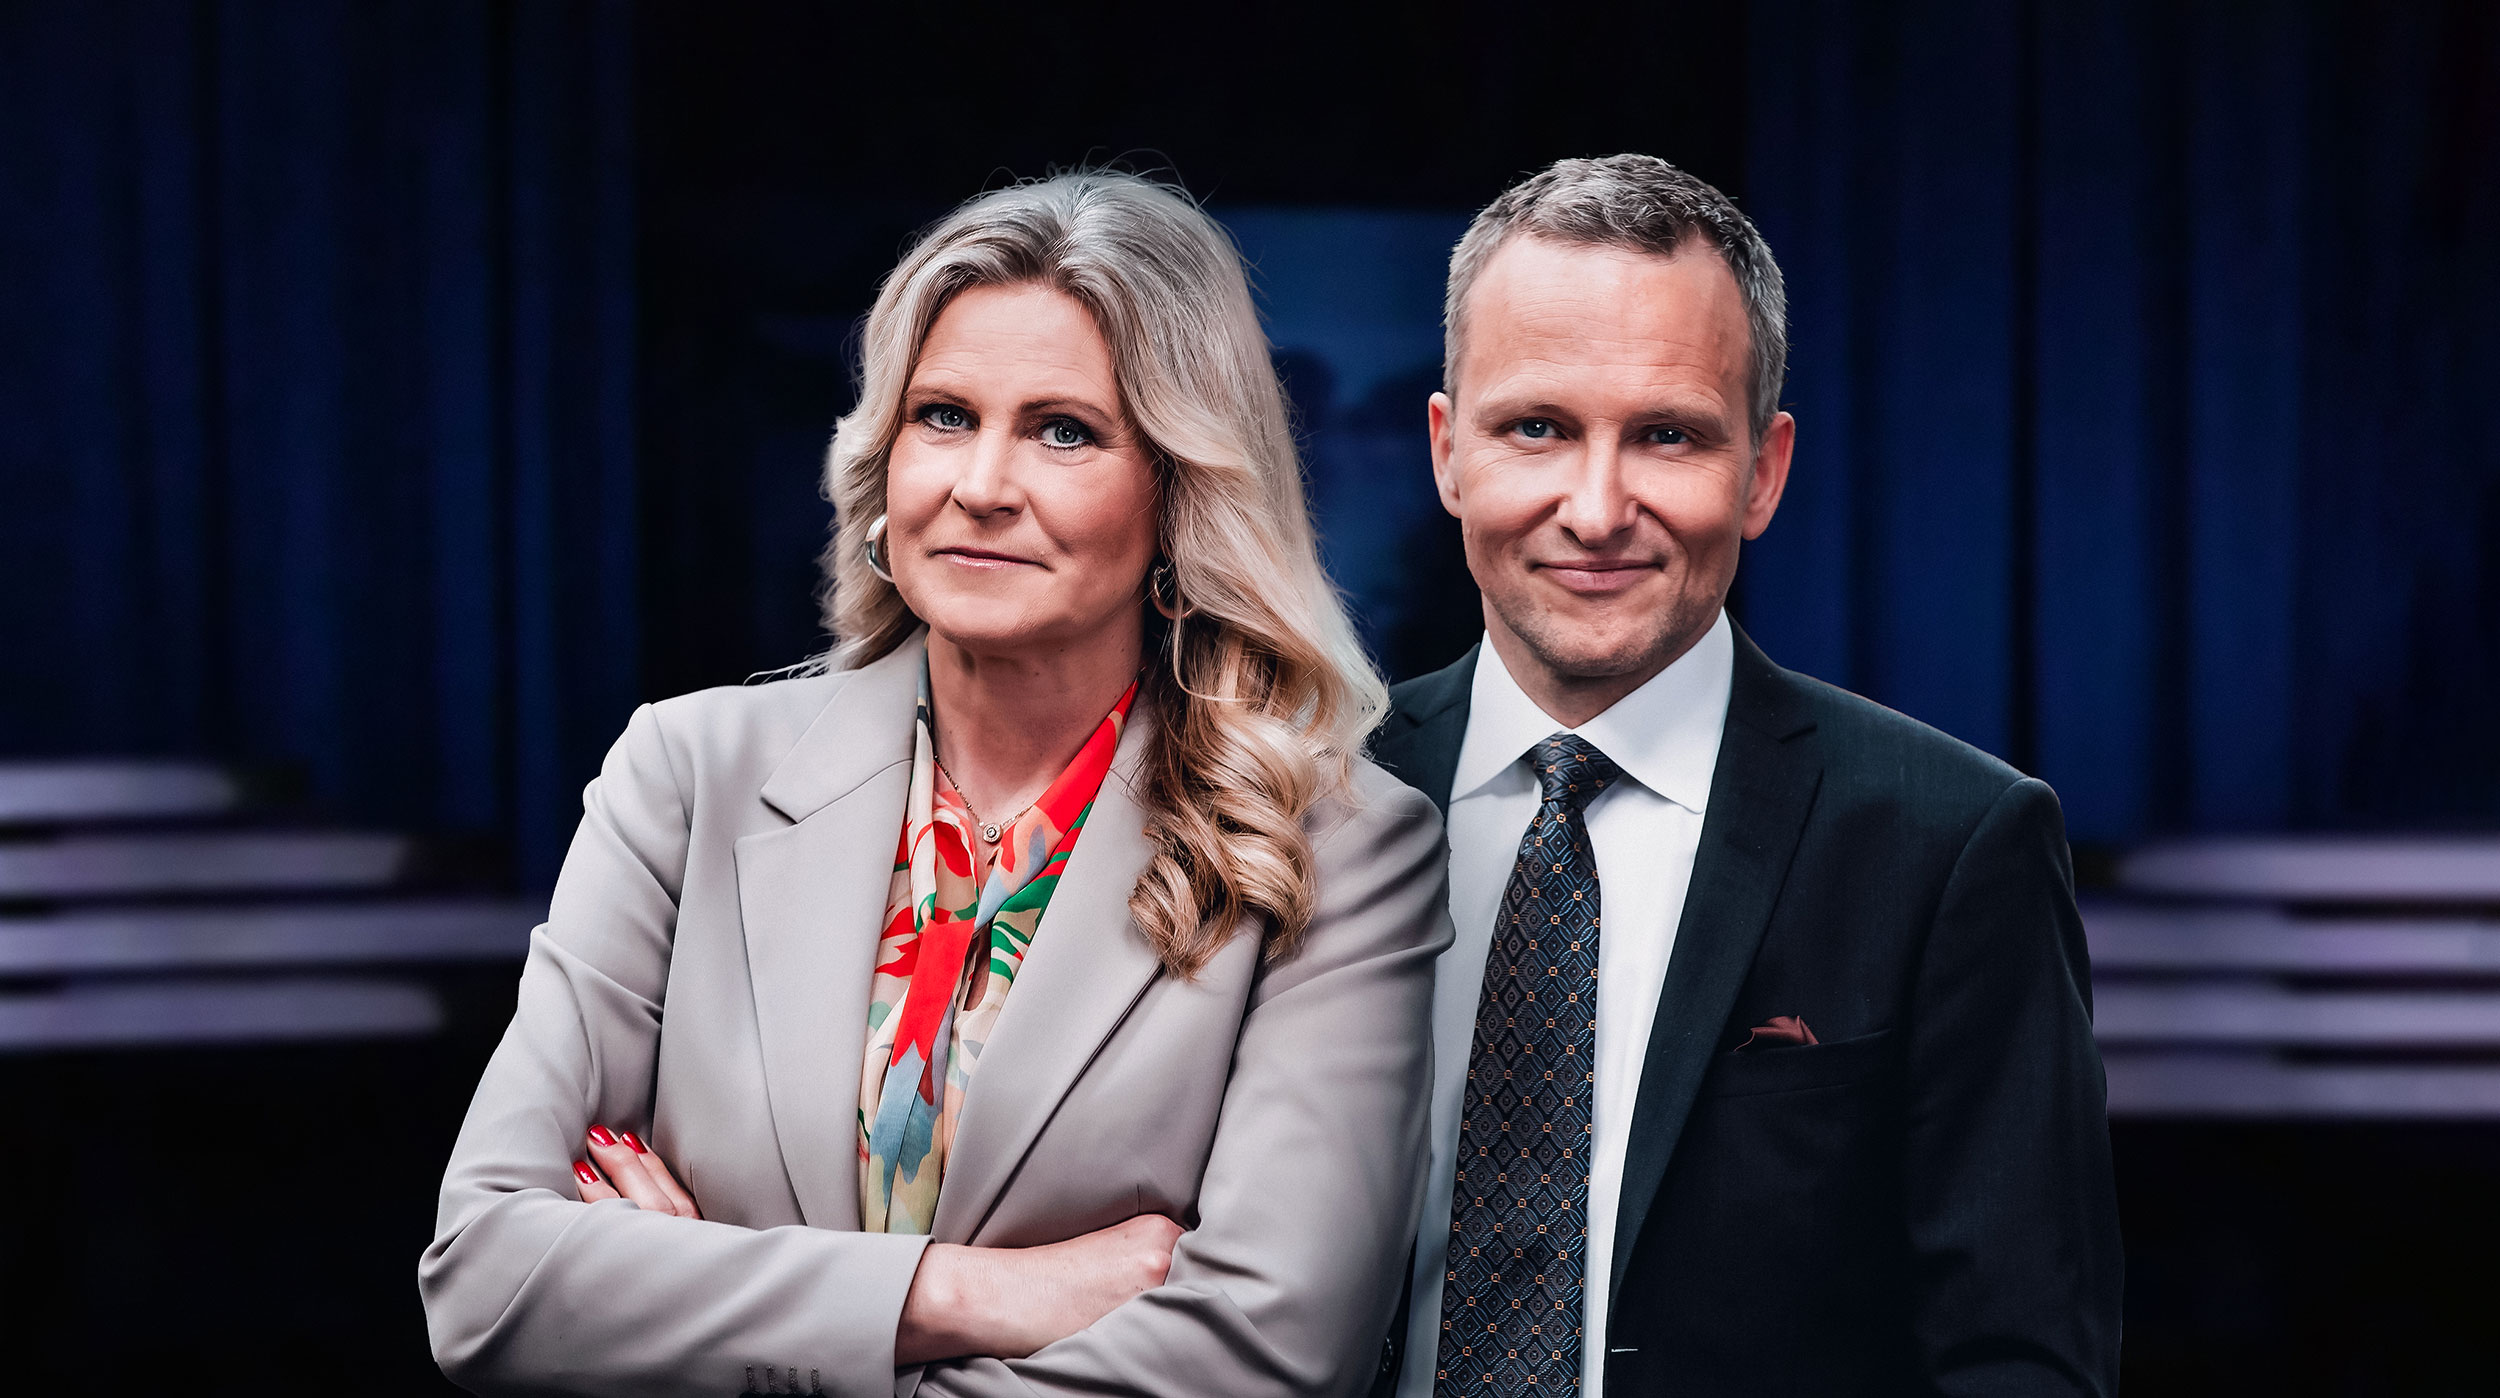 Programledarna Anders Holmberg och Camilla Kvartoft i programmet Agenda, inför partiledardebatten.